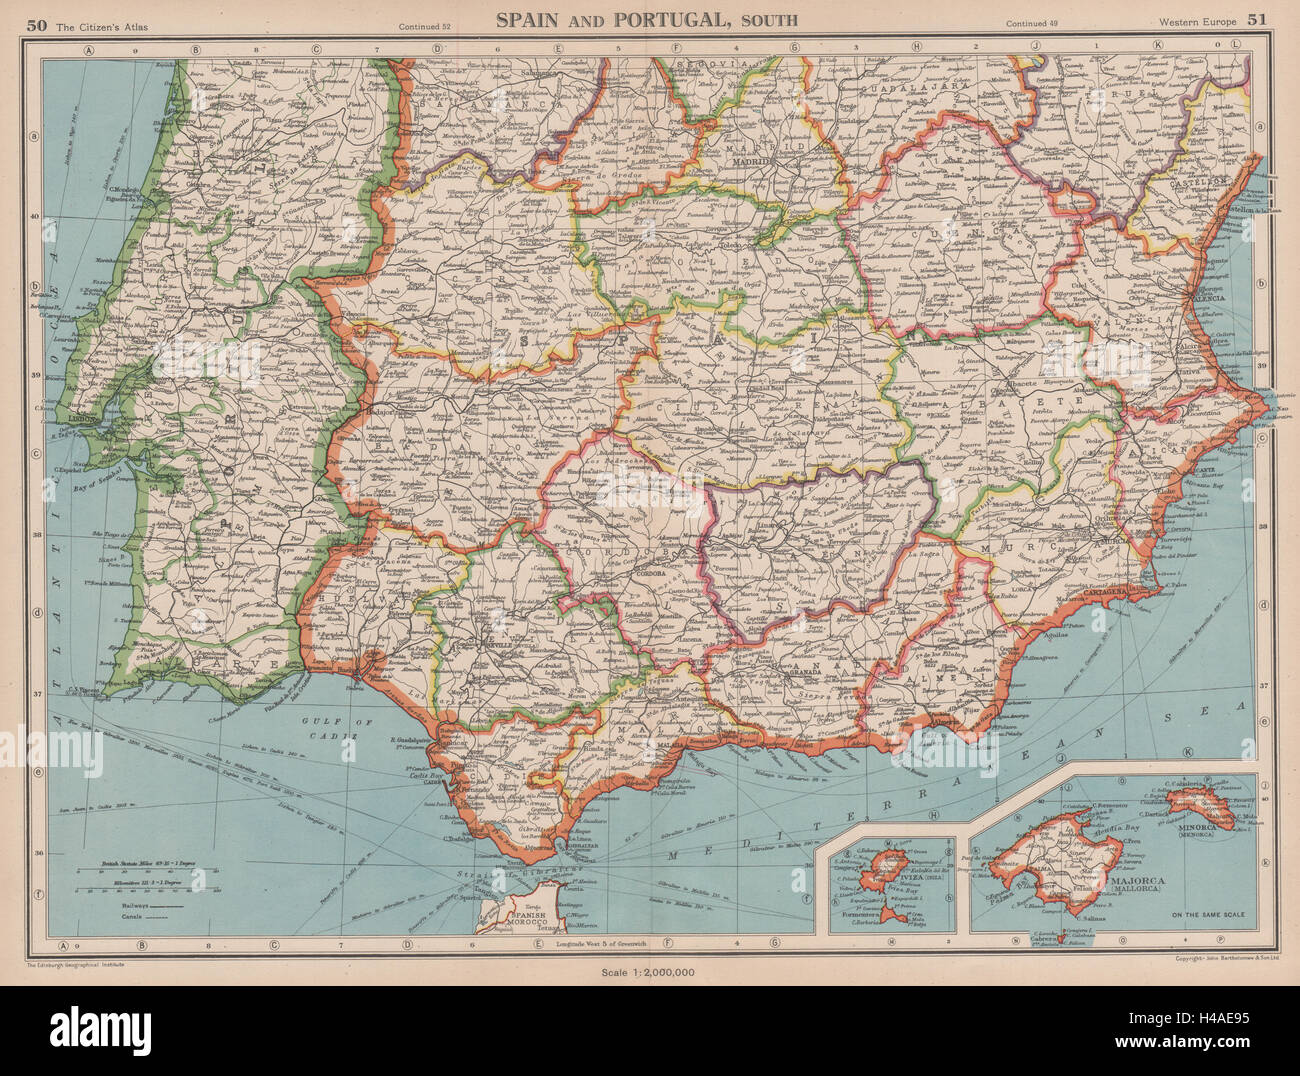 L'IBERIA. Espagne & Portugal. Andalousie Murcie Valence Estrémadure 1944 map Banque D'Images